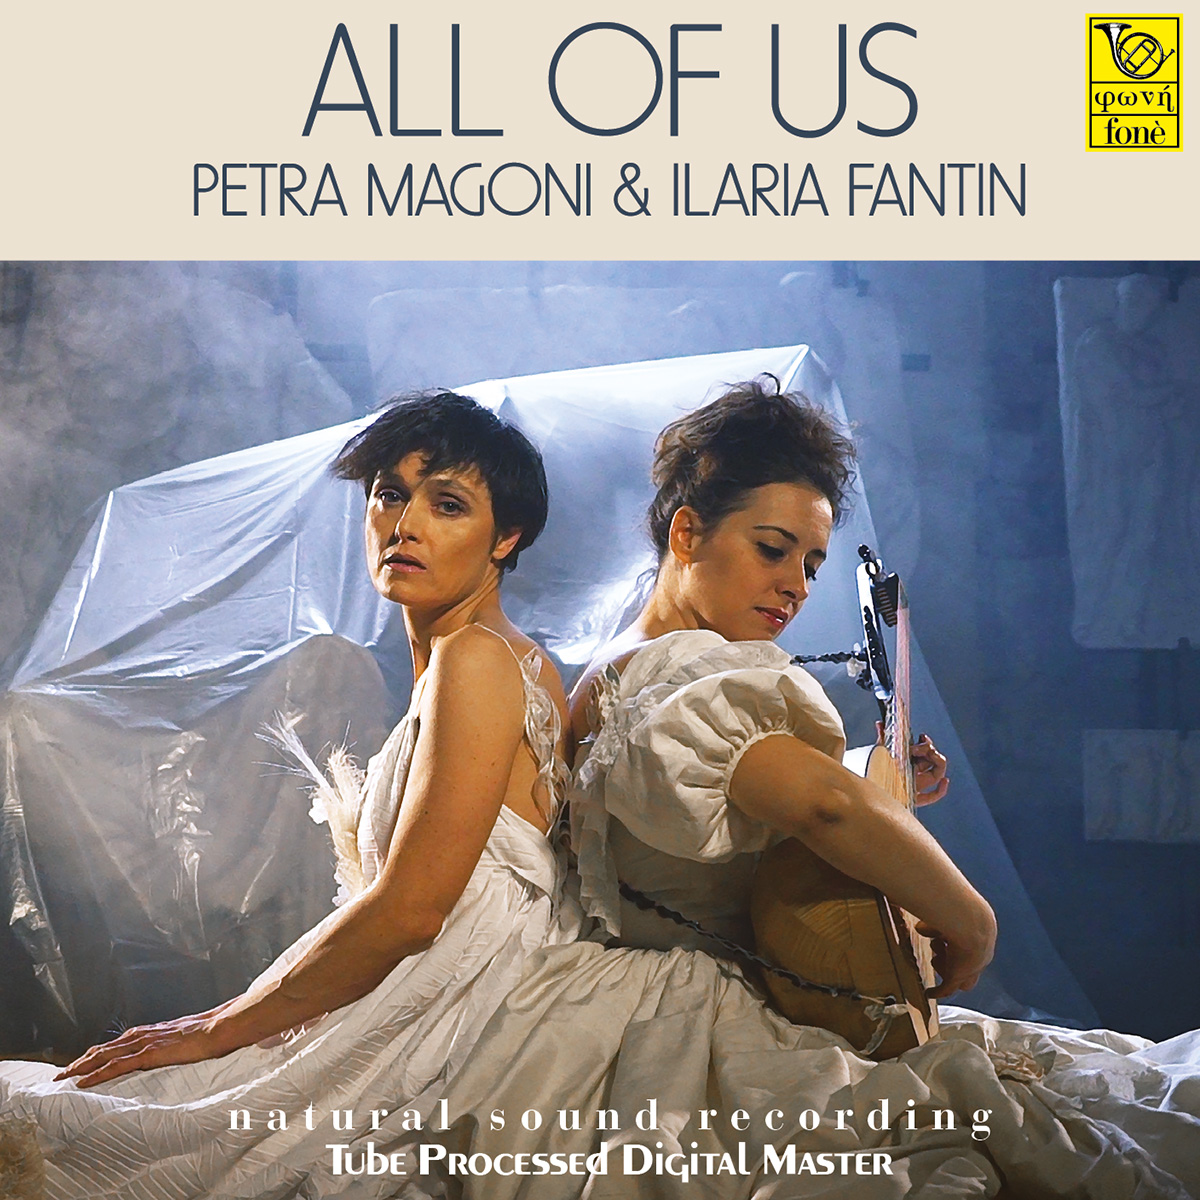 Discografia - All of us - Petra Magoni e Ilaria Fantin